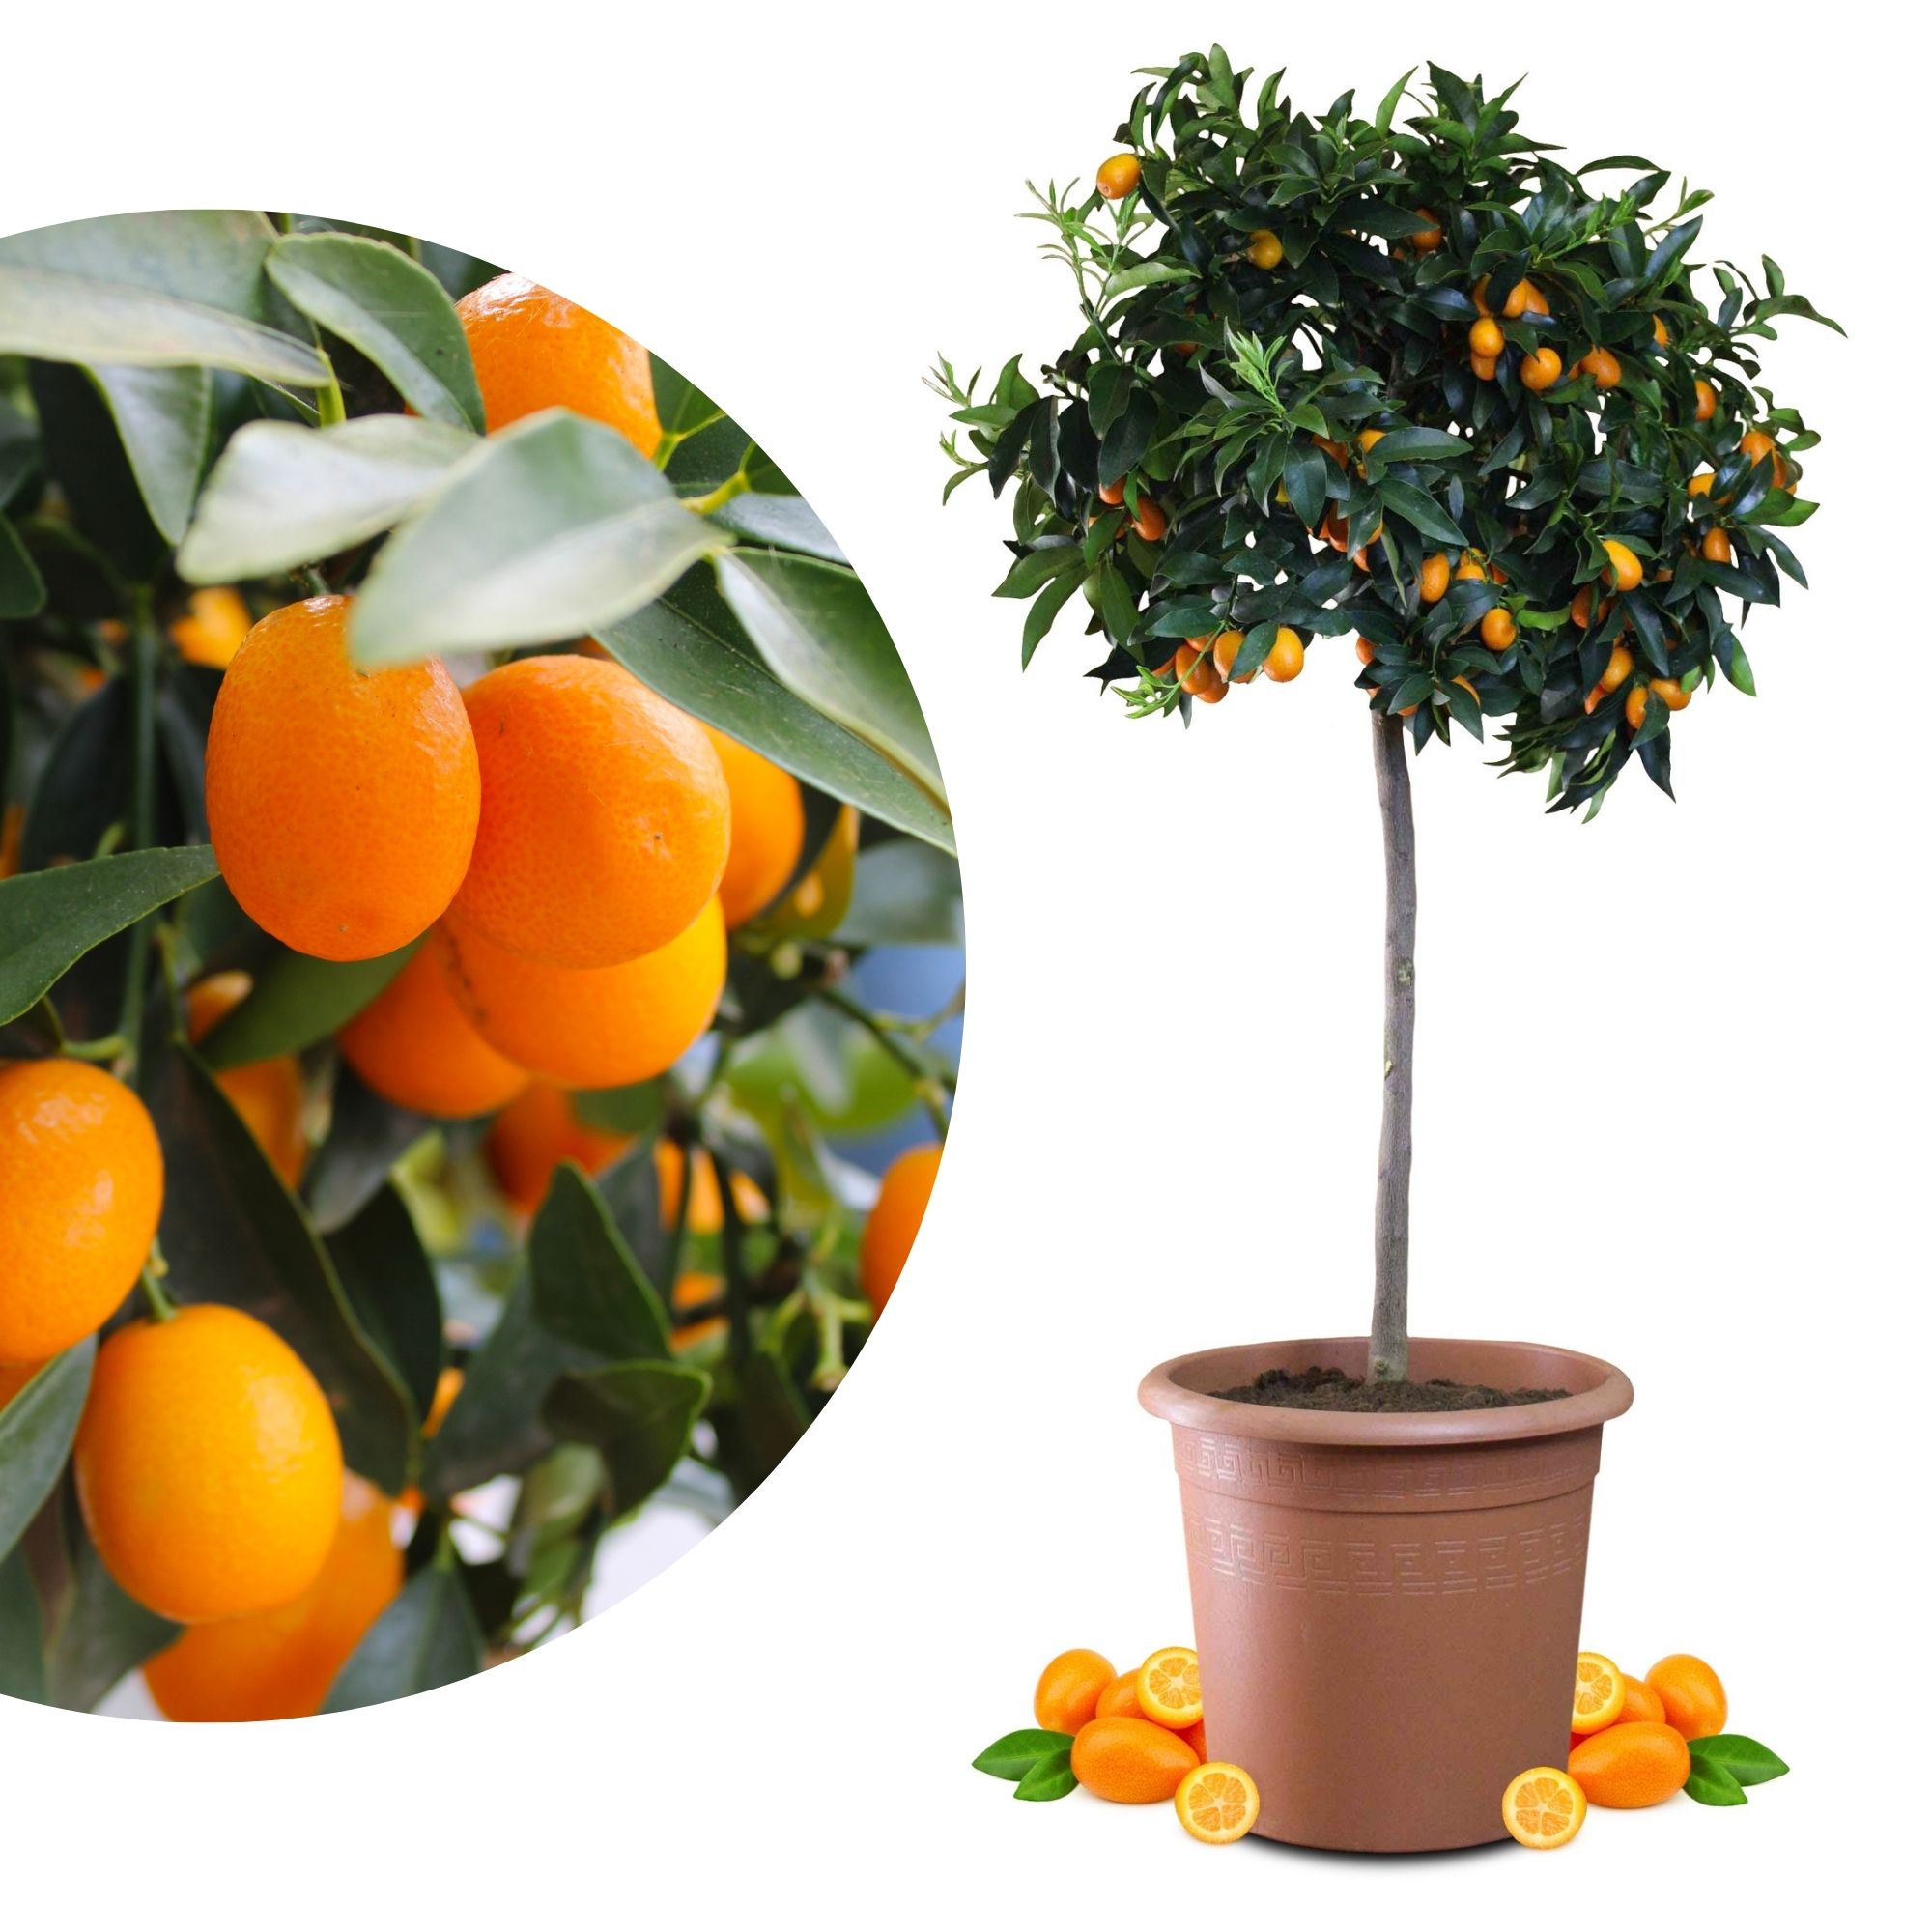 Kumquat [Molto Grande] - Citrus japonica - Fortunella margarita